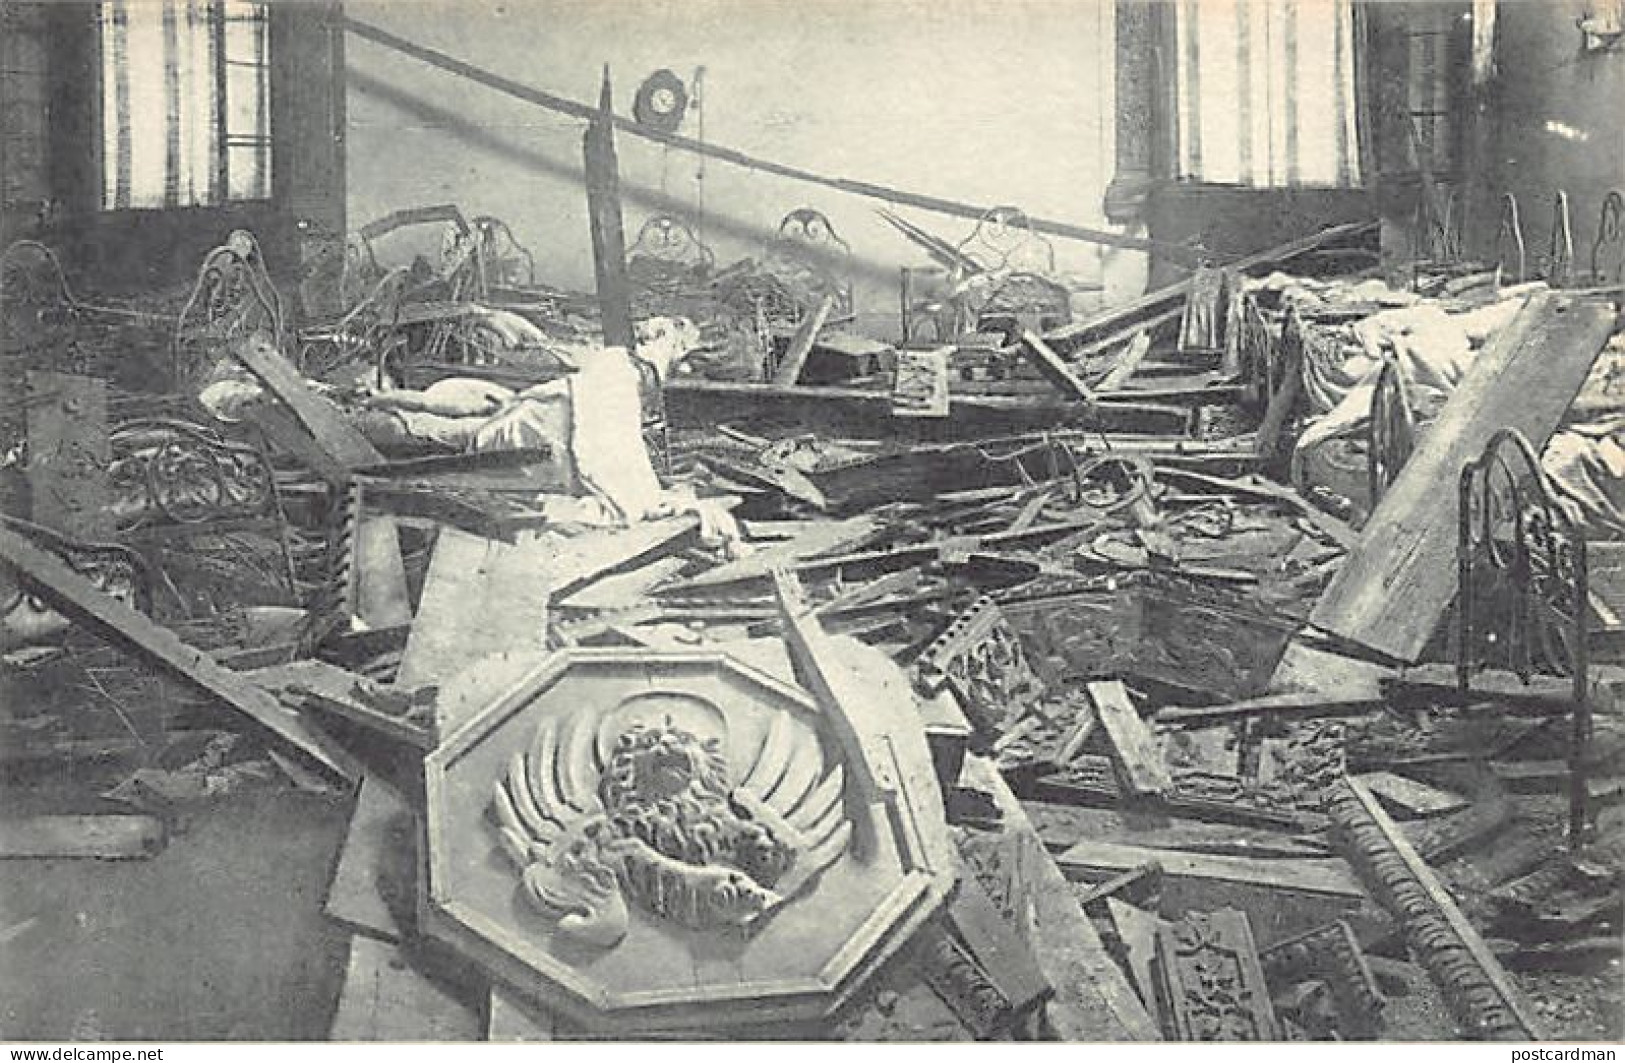  VENEZIA - L'ospedale Civile Bombardato Dagli Austriaci - Settembre 1917 - Venezia